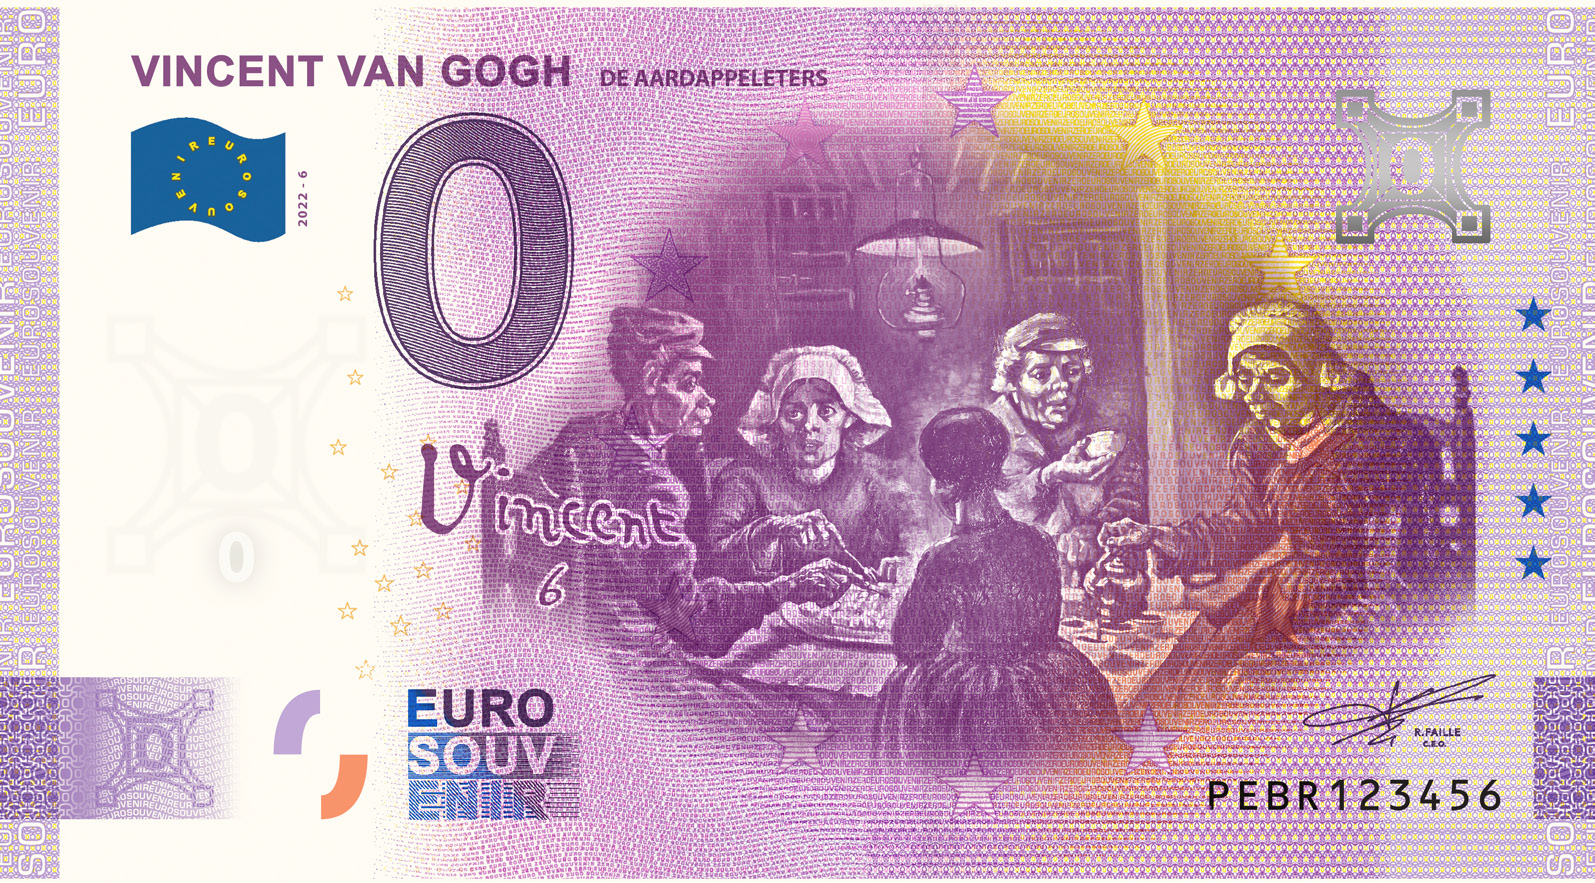 0 Euro biljet Nederland 2022 - Vincent van Gogh VI De Aardappeleters